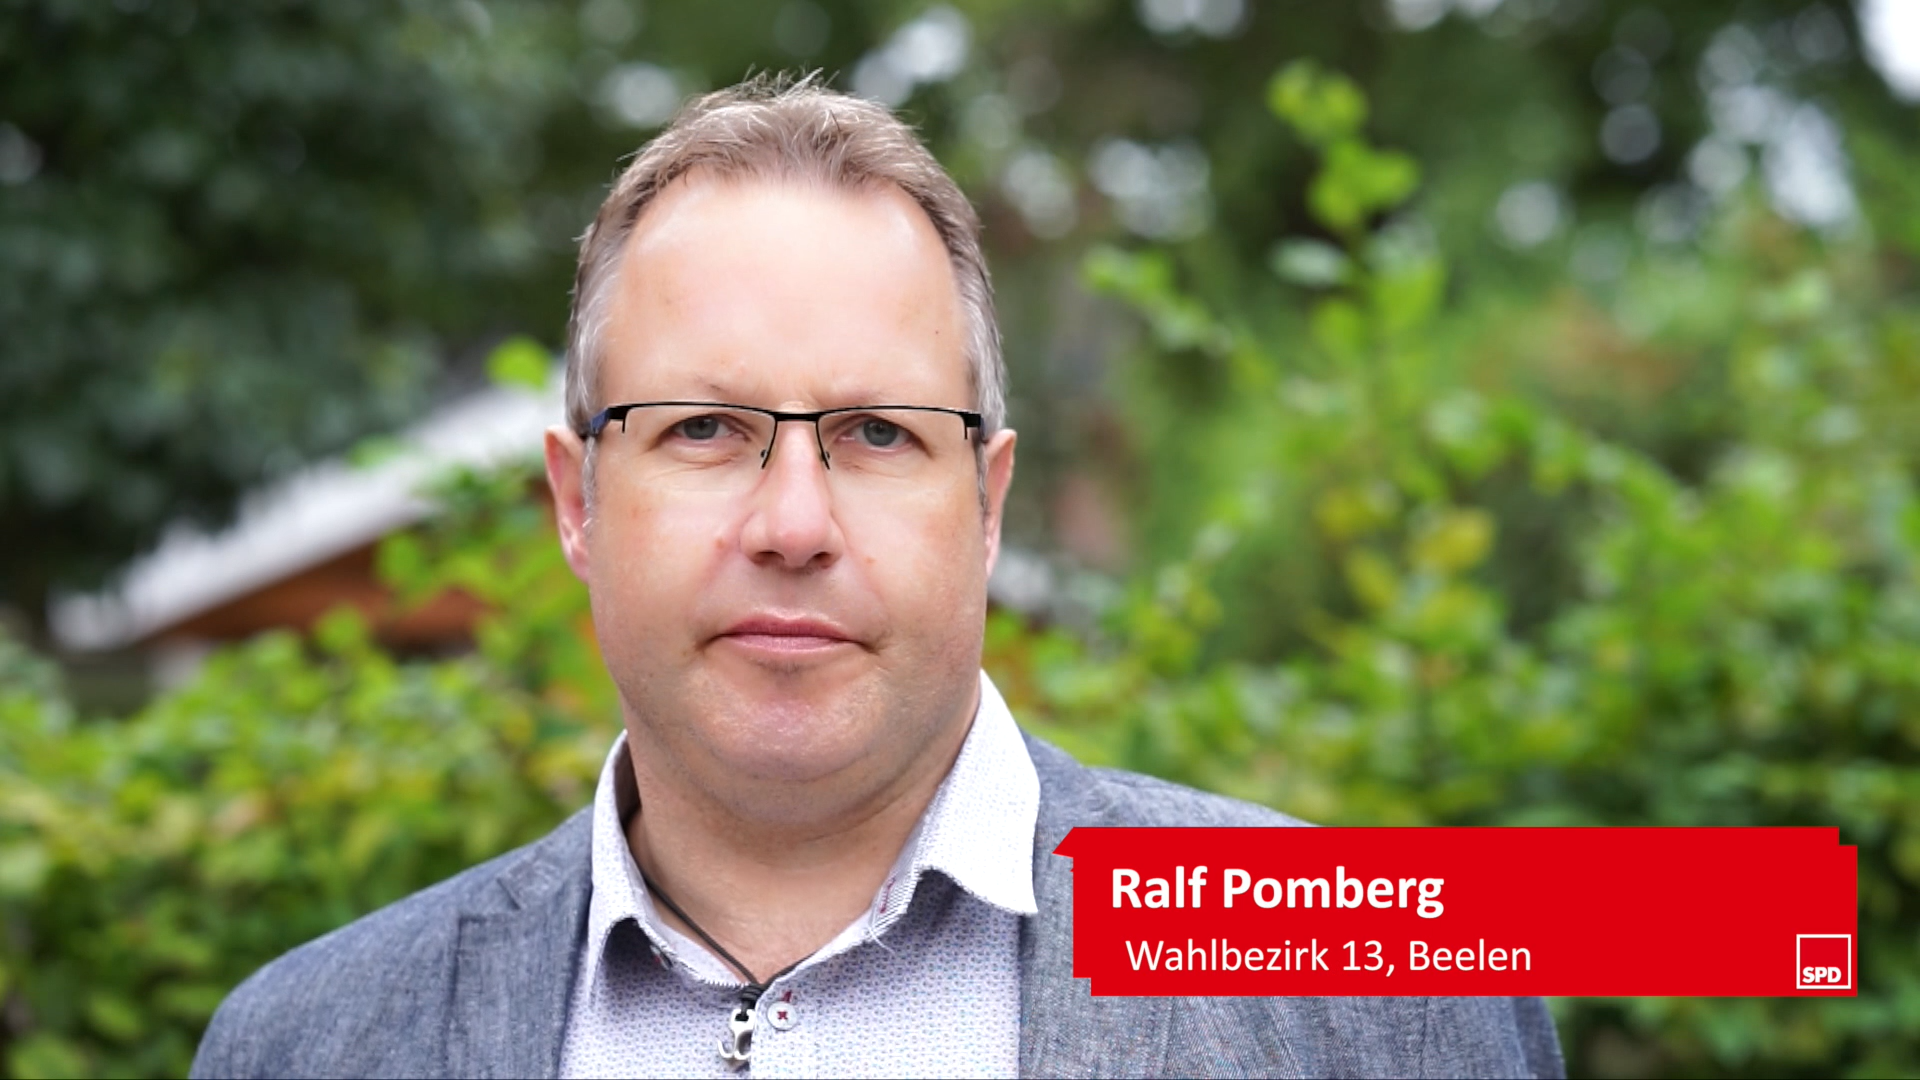 Ralf Pomberg für eine neuen Kurs im Kreis Warendorf